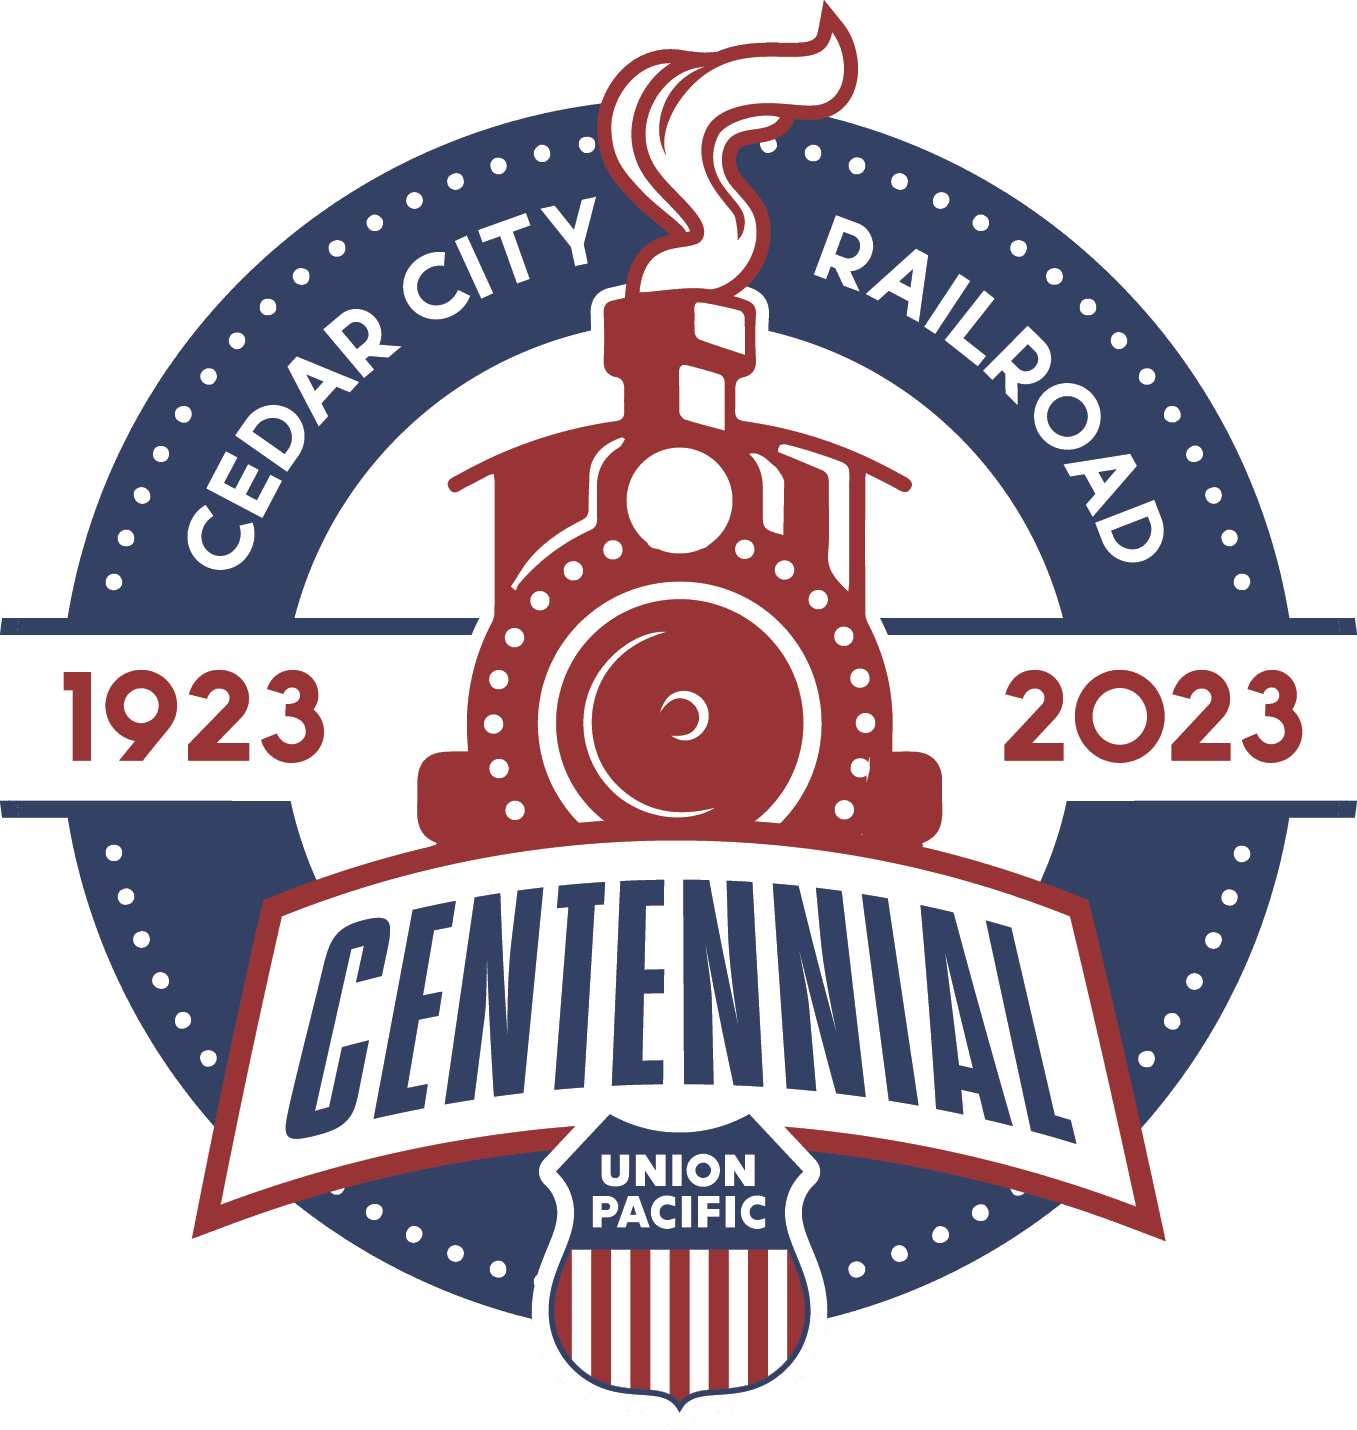 Cedar City Railroad Centennial Logo 2023